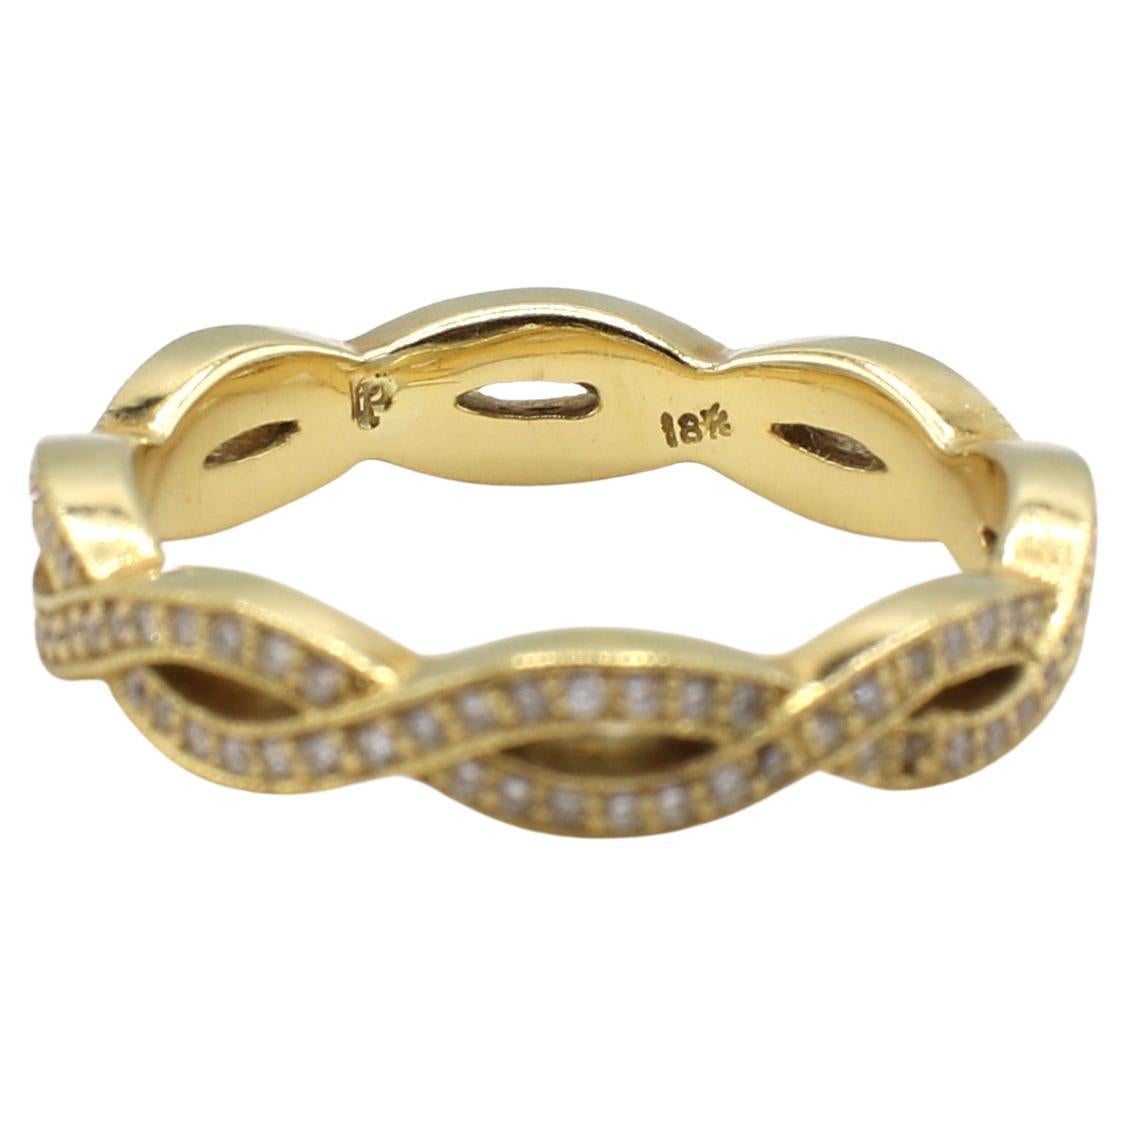 Penny Preville 18 Karat Gelbgold Twist Natürlicher Diamant Eternity-Ring 
Metall: 18 Karat Gelbgold
Gewicht: 4.26 Gramm
Diamanten: Ca. .50 CTW G-H VS runde natürliche Diamanten
Größe: 6.25 (US)
Breite: 4 mm
Höhe: 2 mm